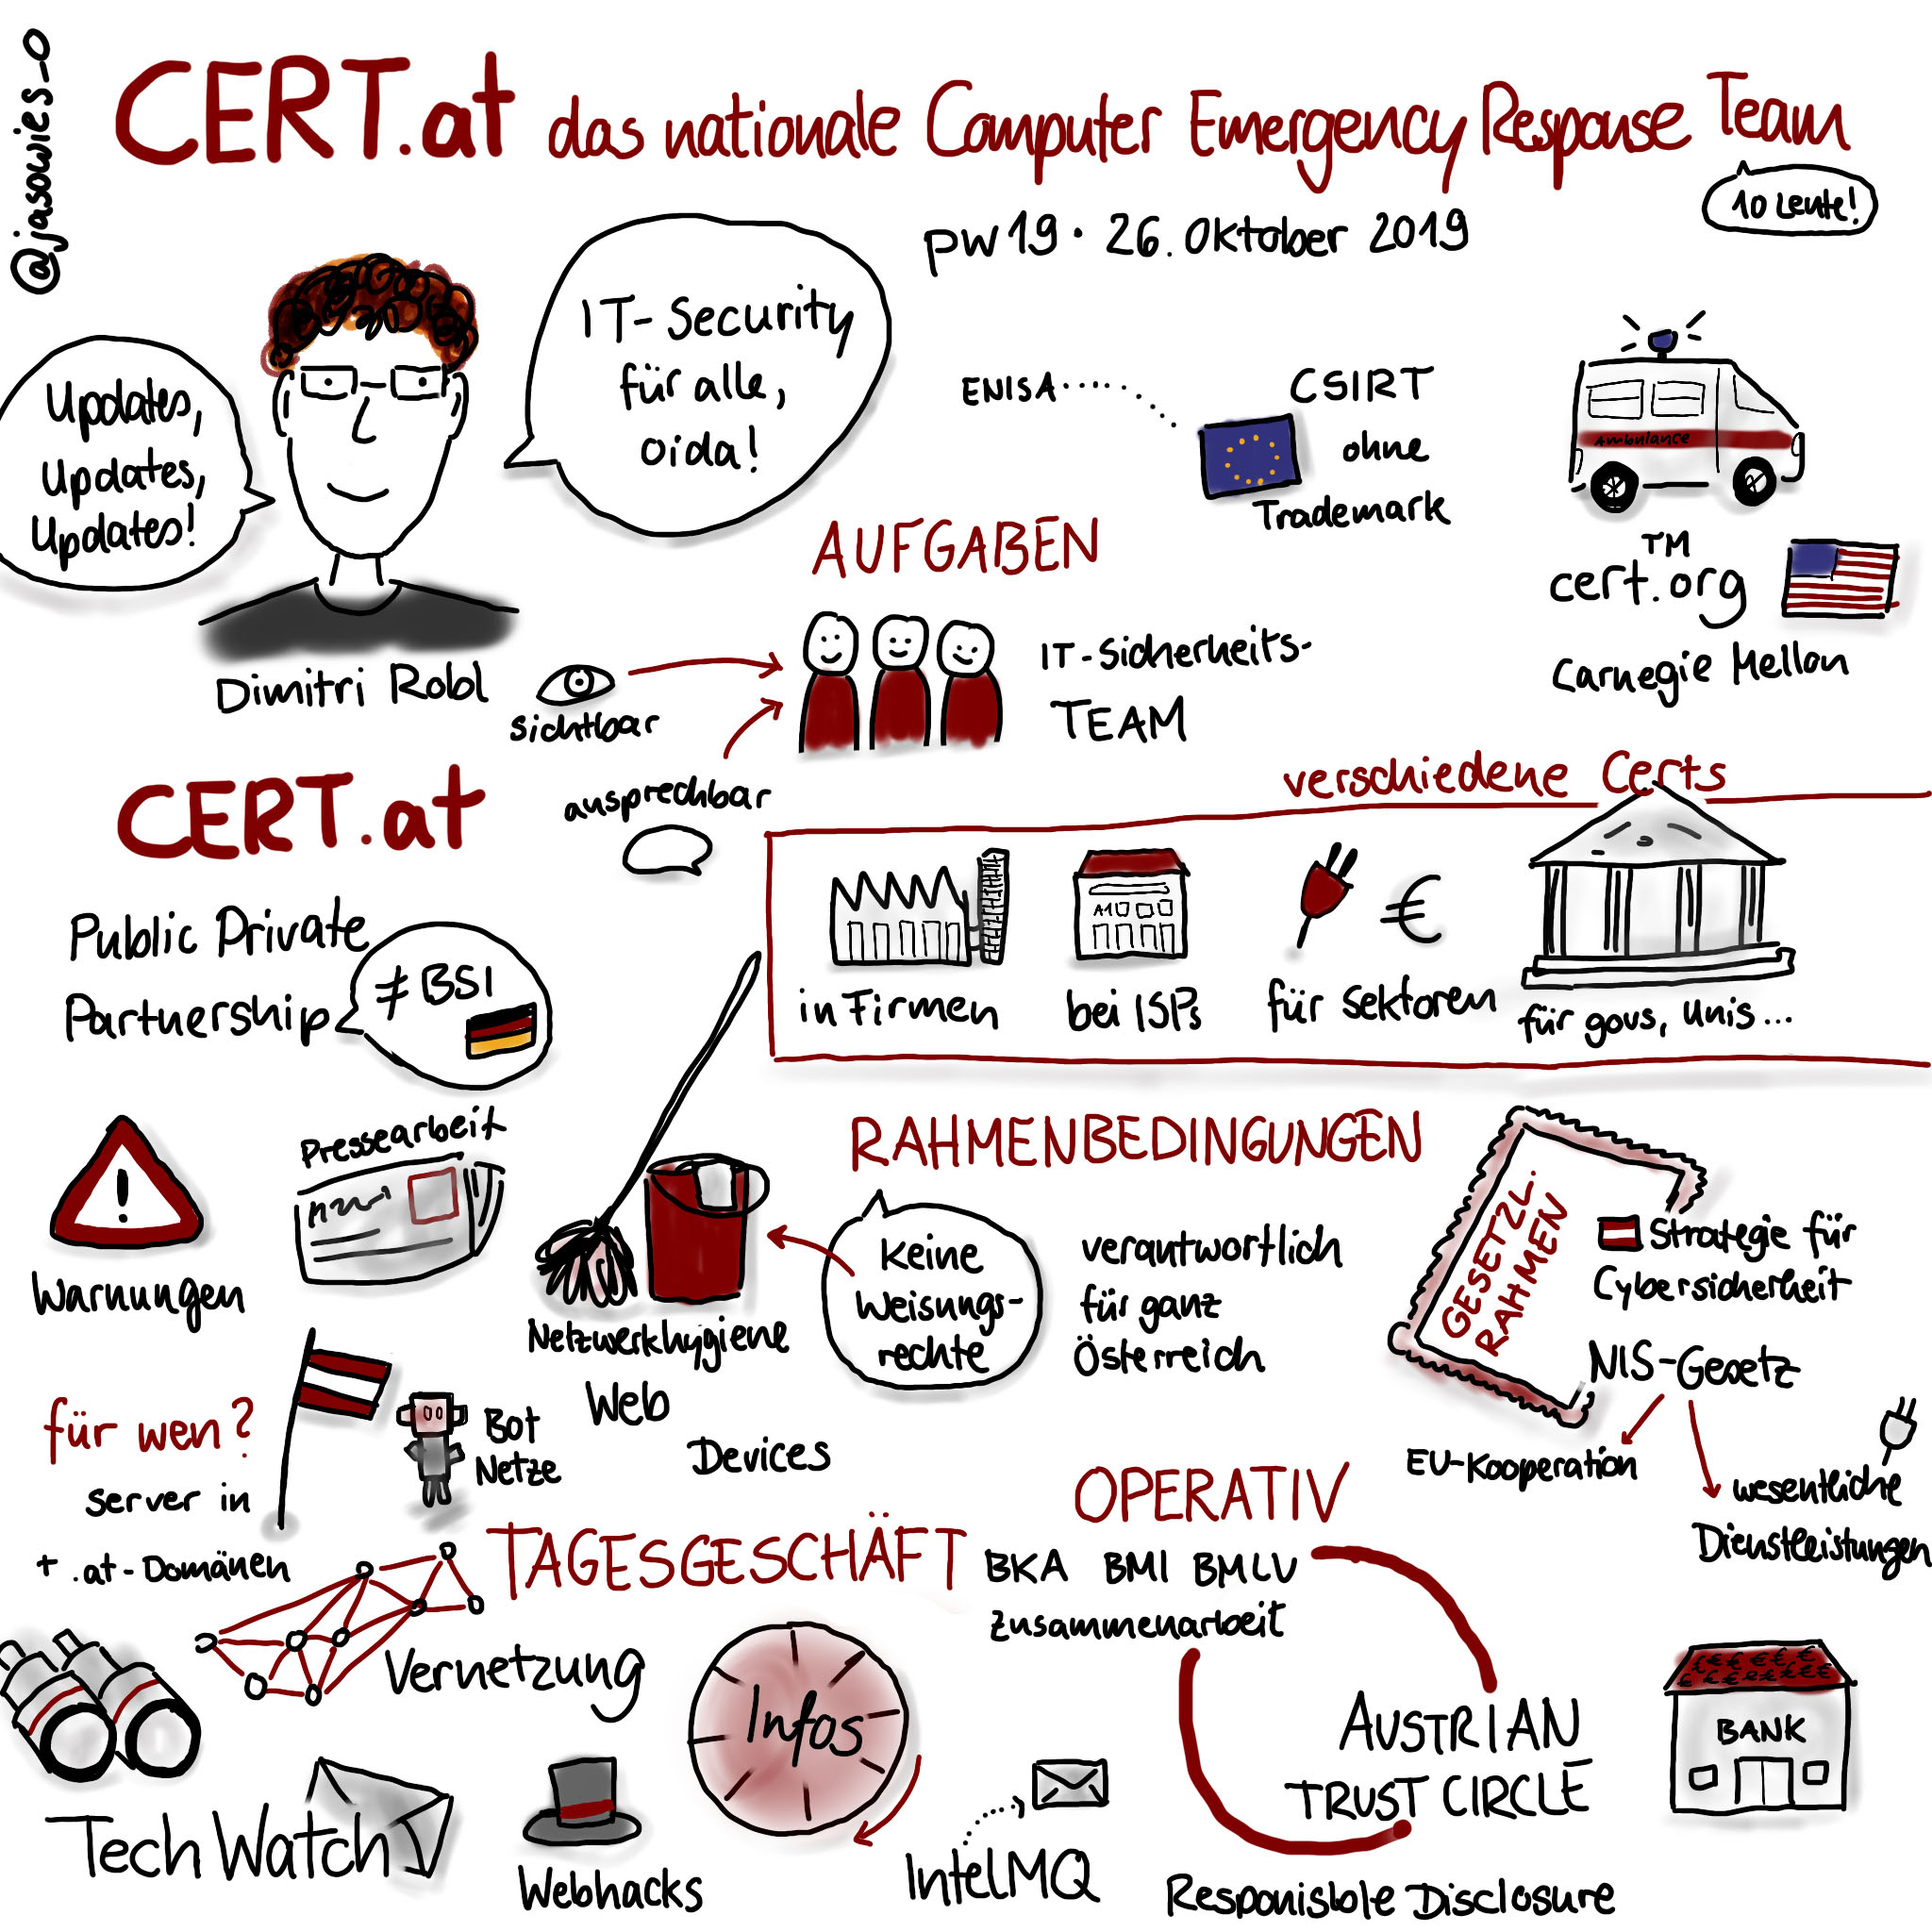 Sketchnotes zu einem Vortrag über CERT.at bei der PrivacyWeek 2019